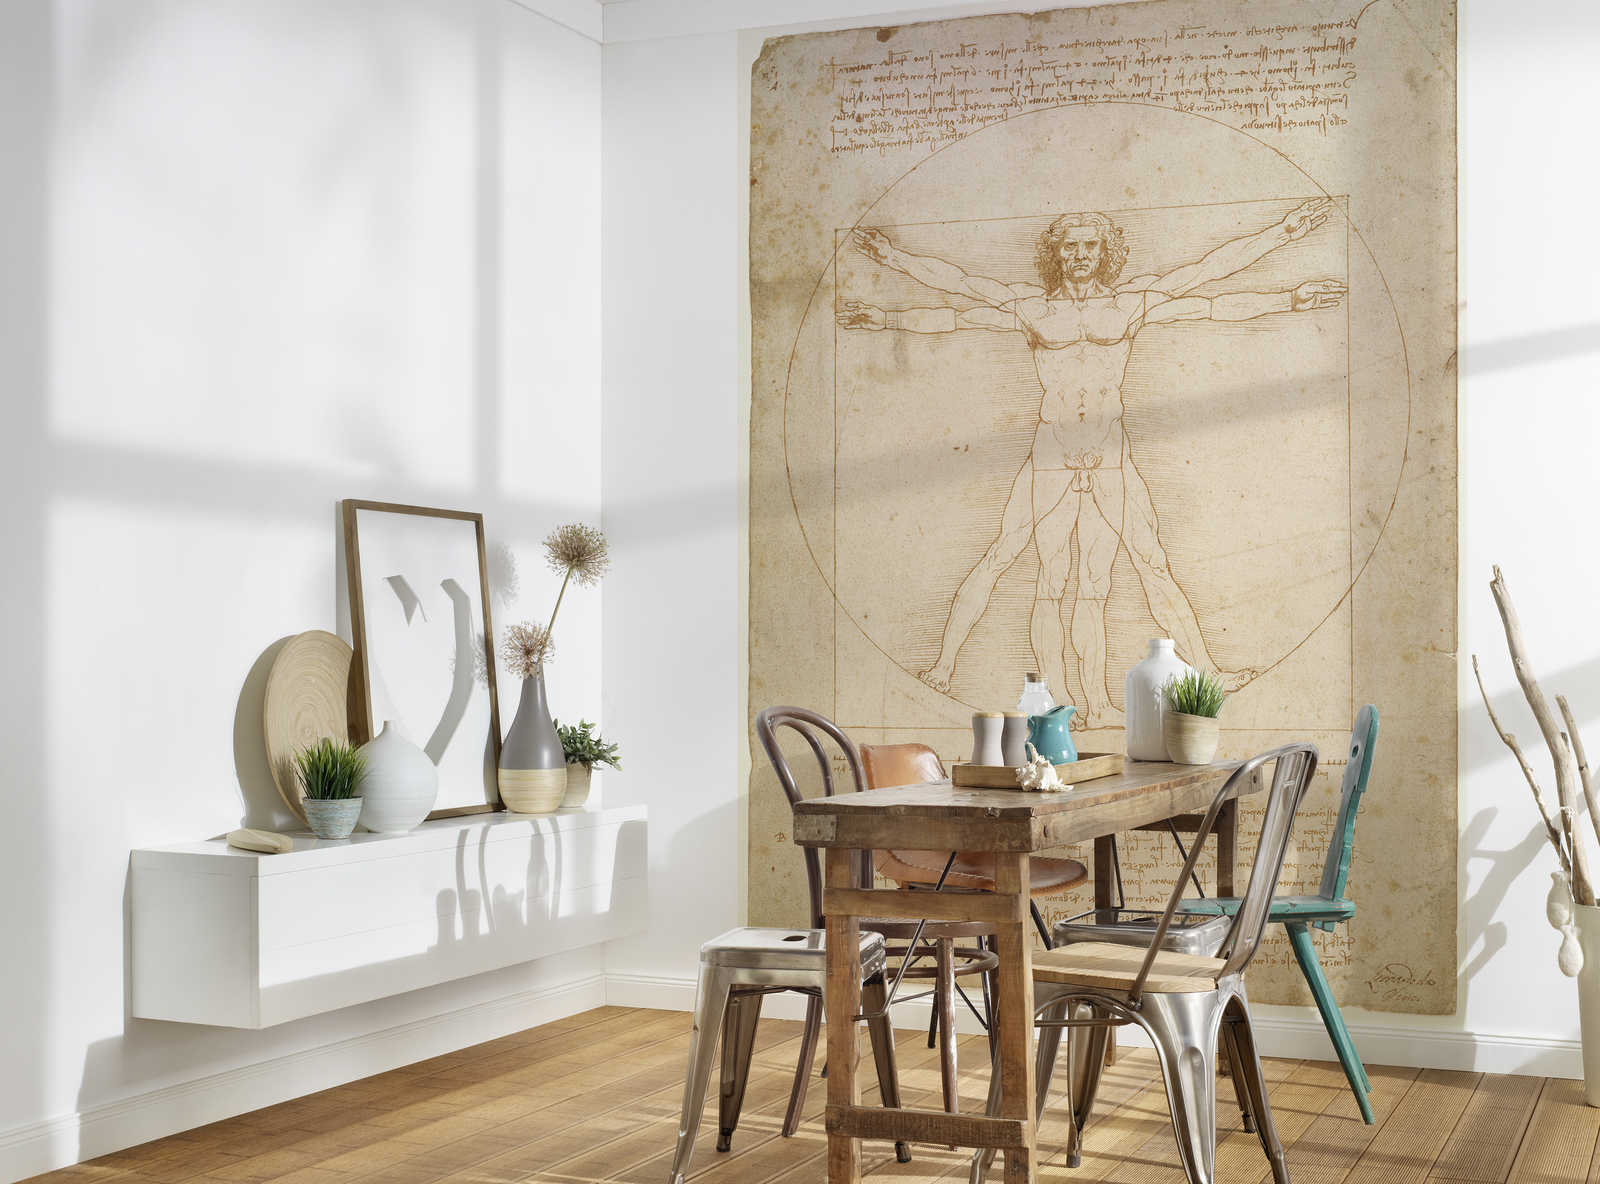             L'Uomo Vitruviano" murale di Leonardo da Vinci
        